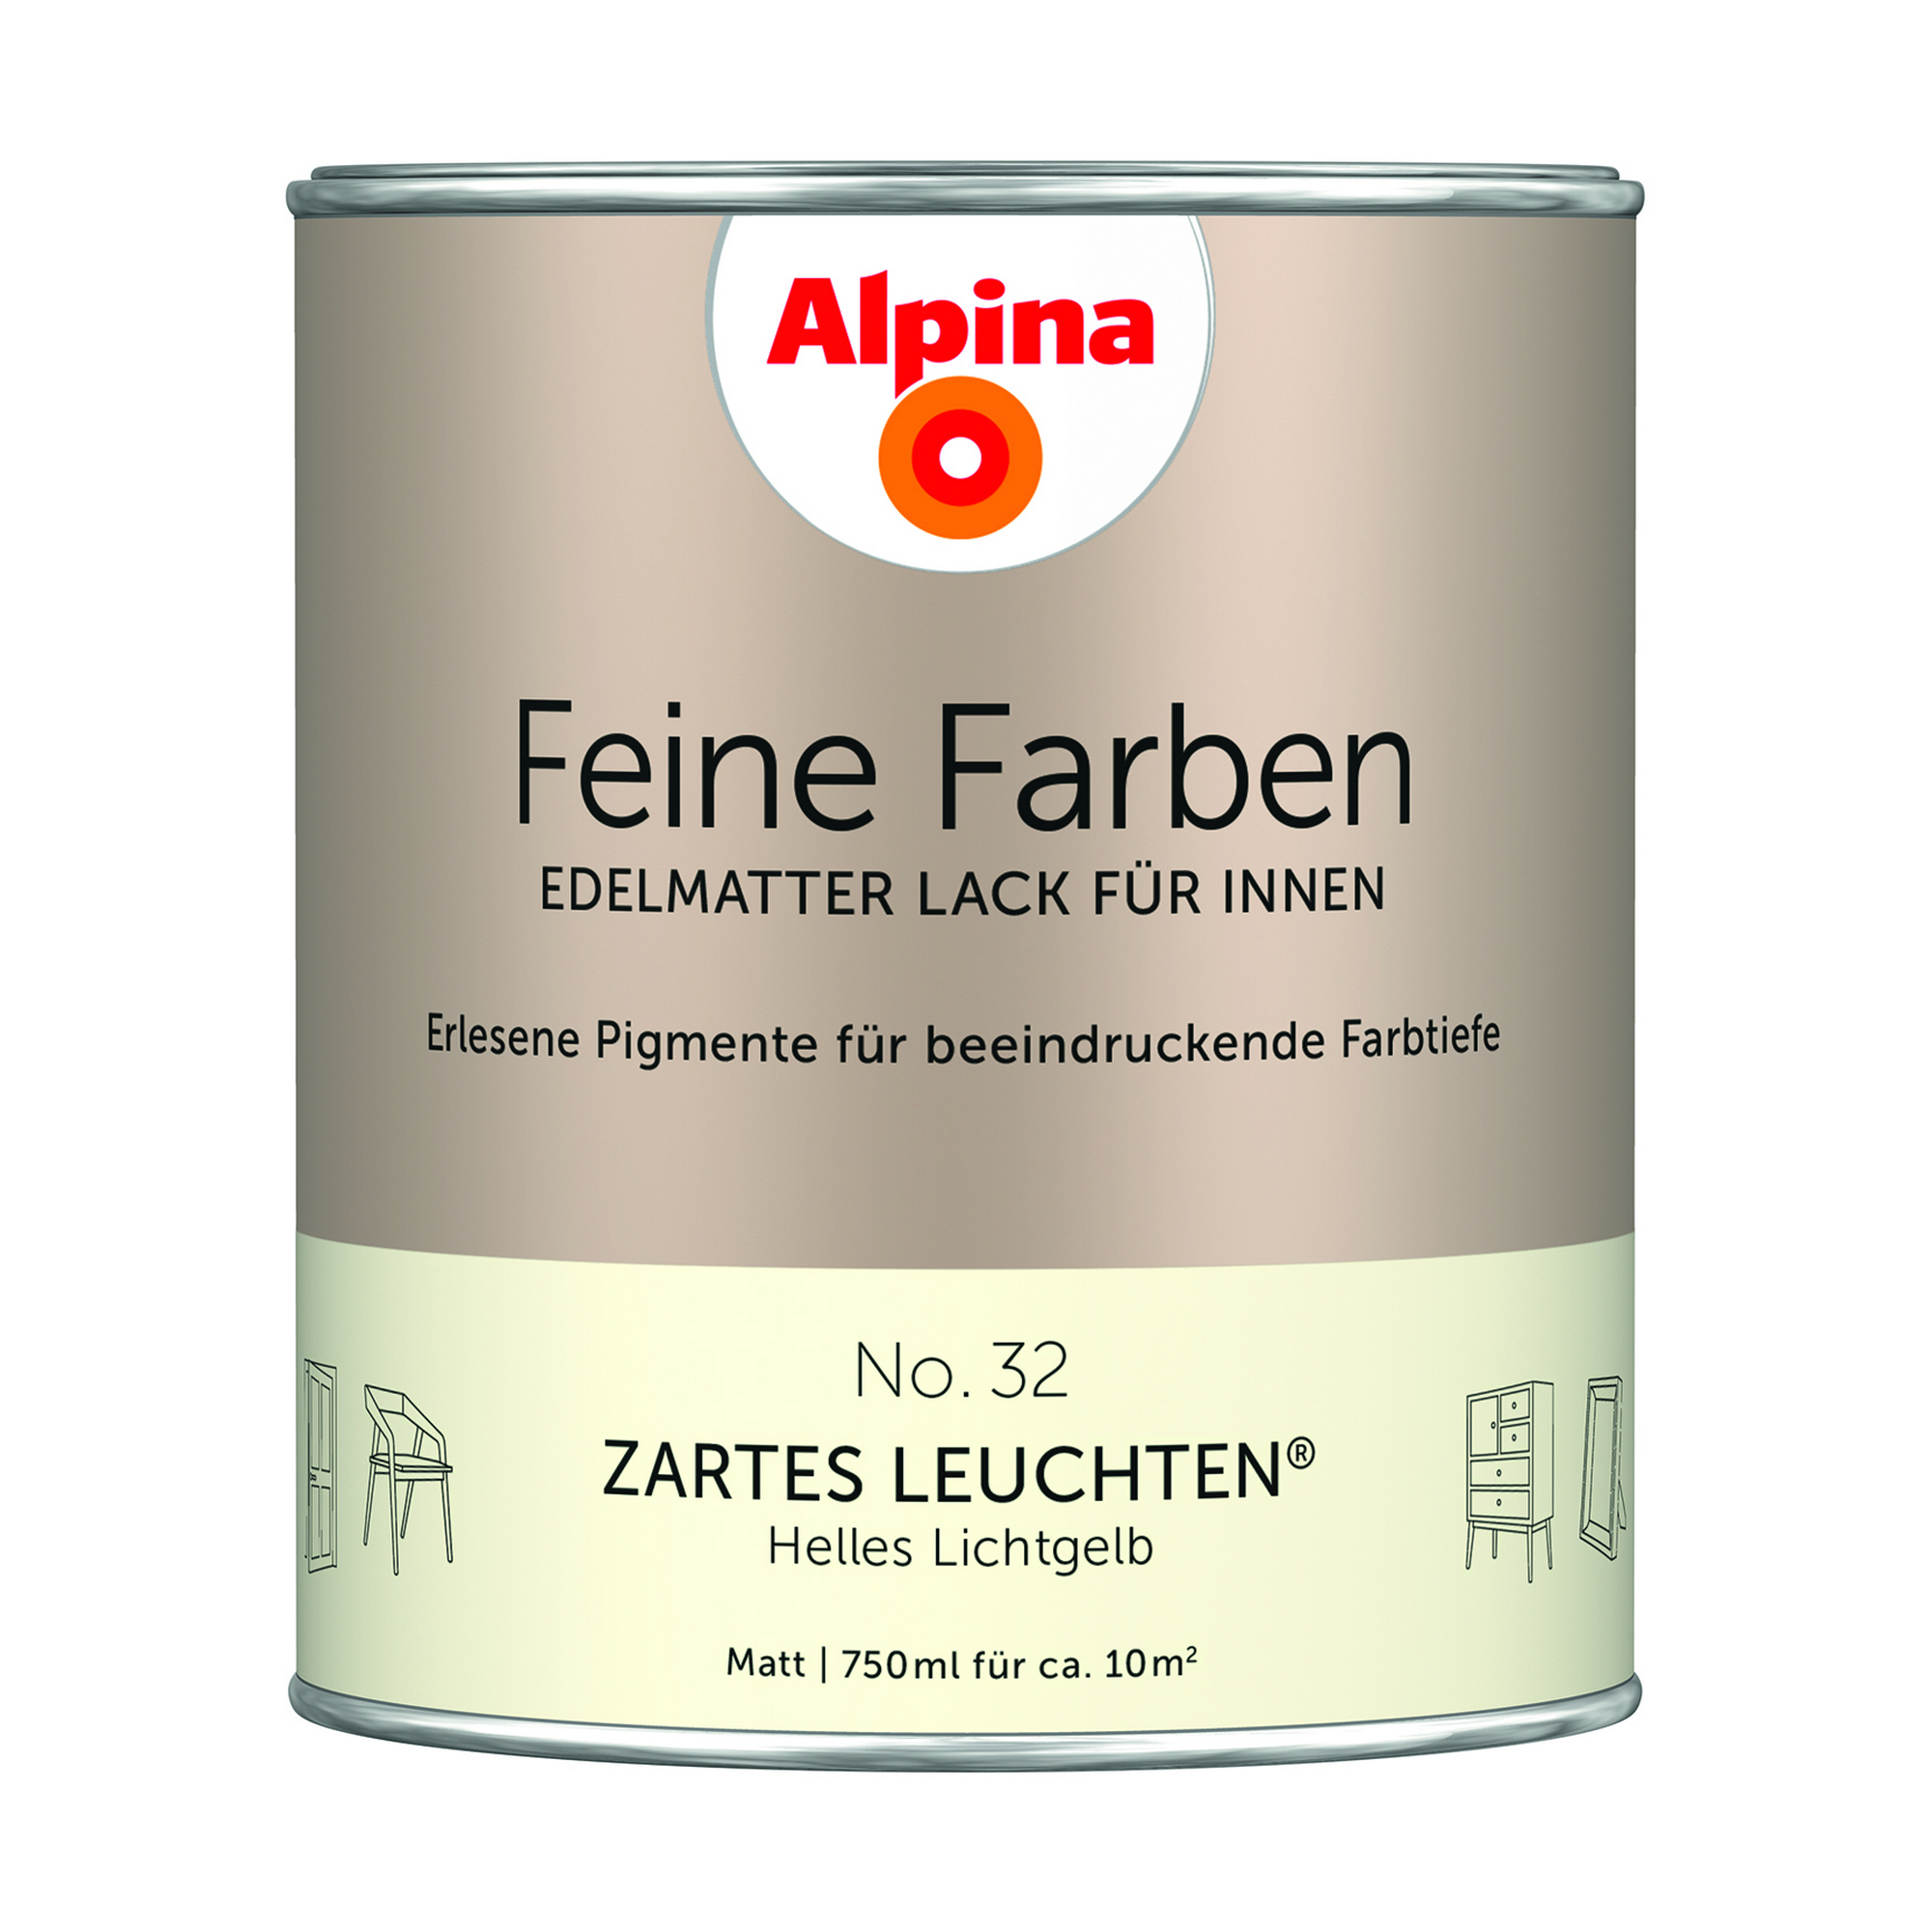 Feine Farben 'Zartes Leuchten' hellgelb matt 750 ml + product picture